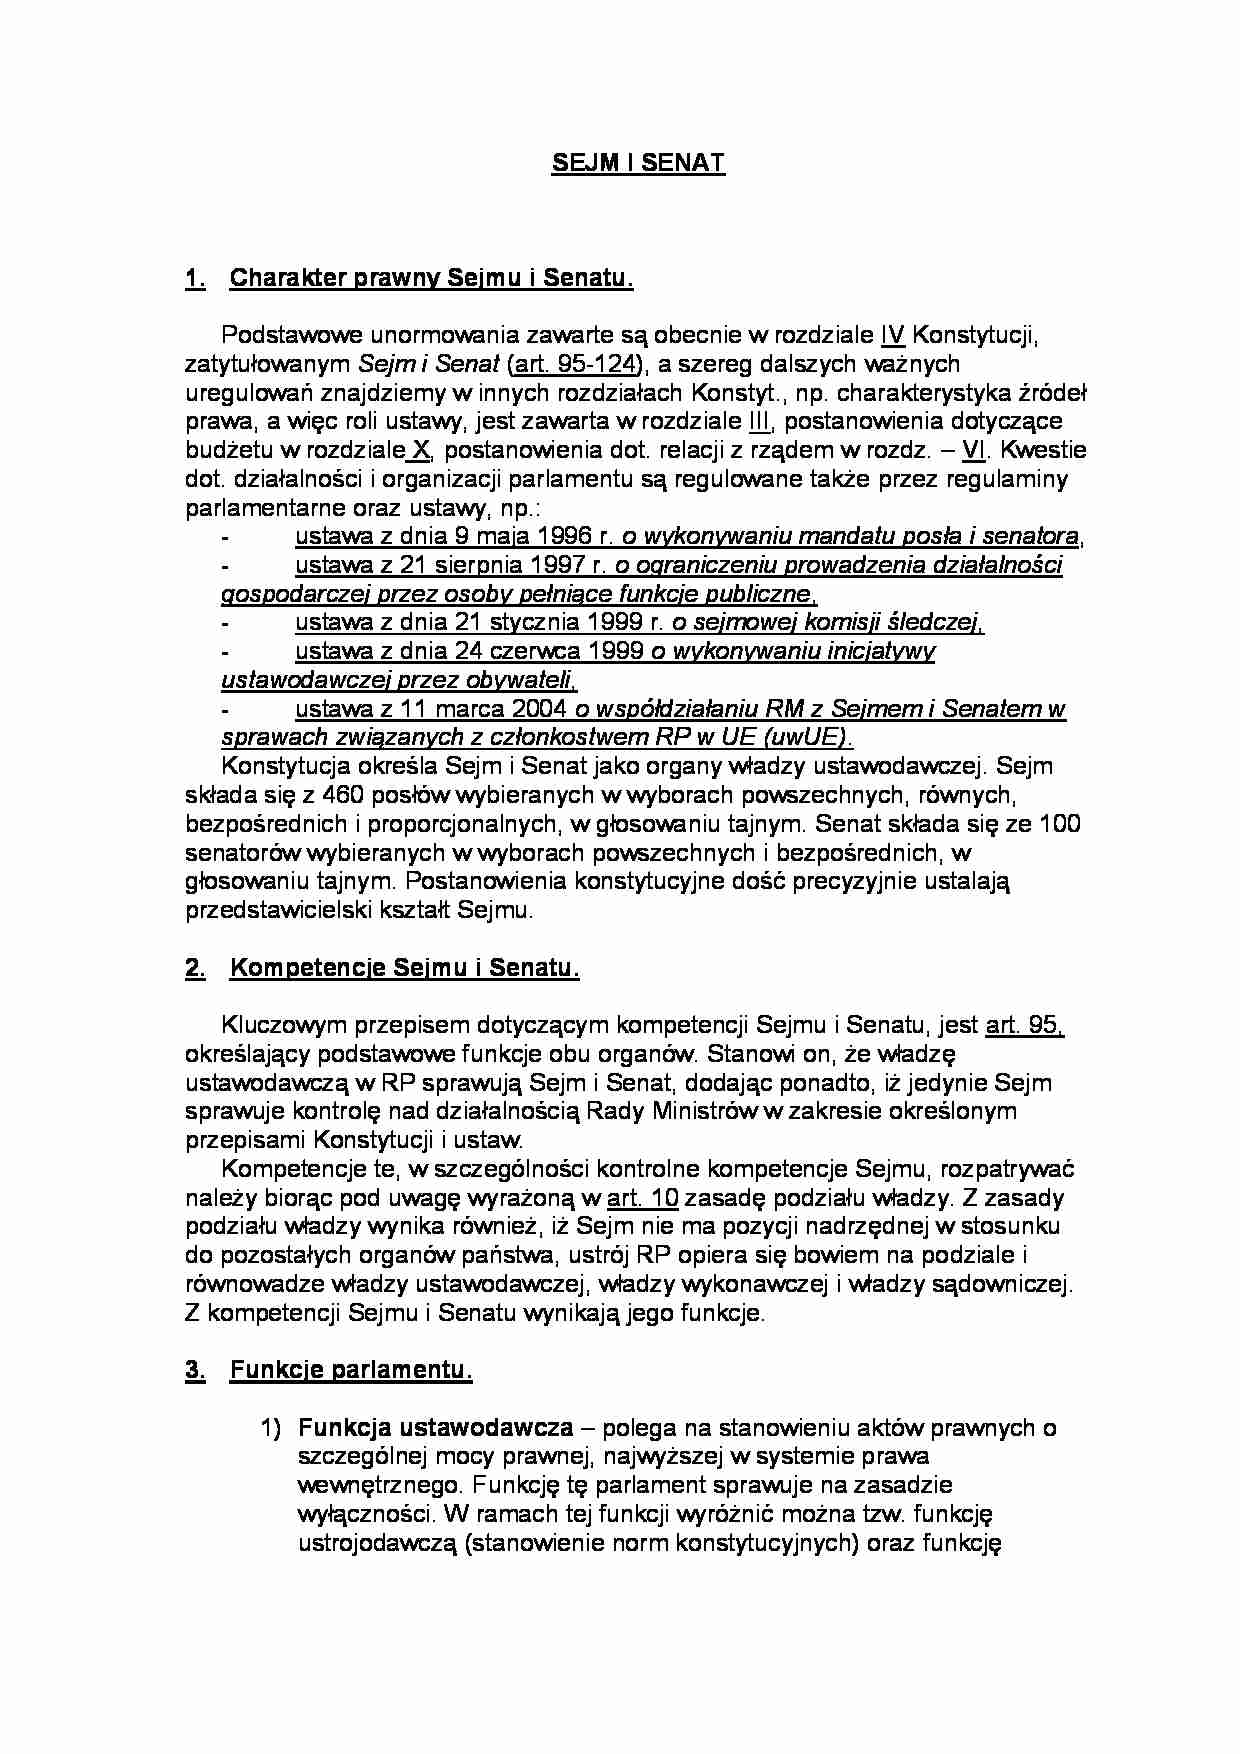 Charakter prawny Sejmu i Senatu-opracowanie - strona 1